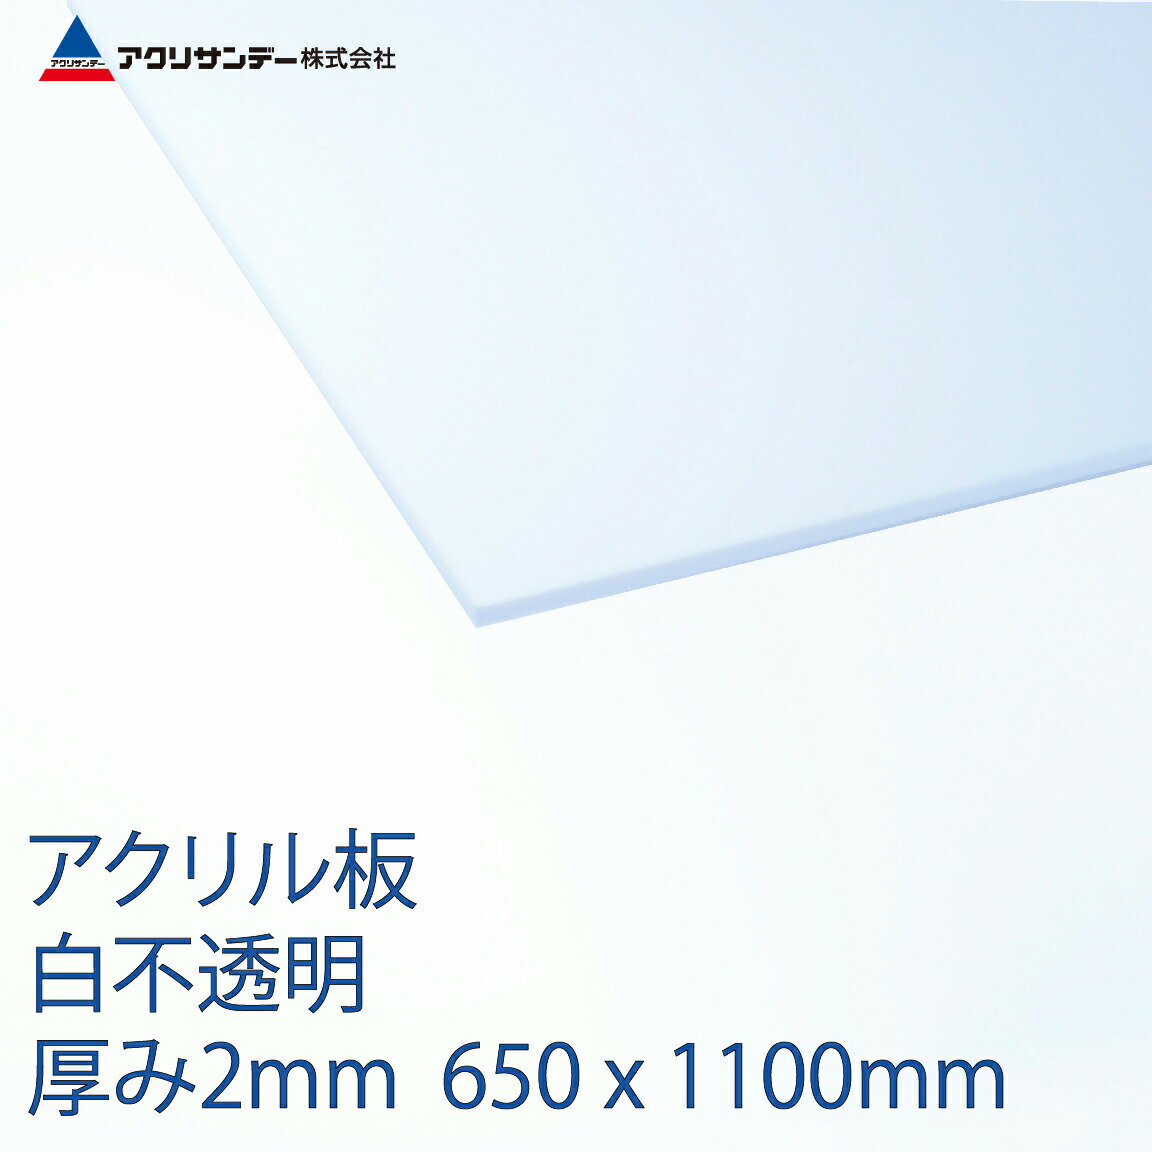 アクリル 白 401 不透明 厚み2mm 650 1100mm キャスト板 Lサイズ プラスチック 色板 DIY アクリサンデー